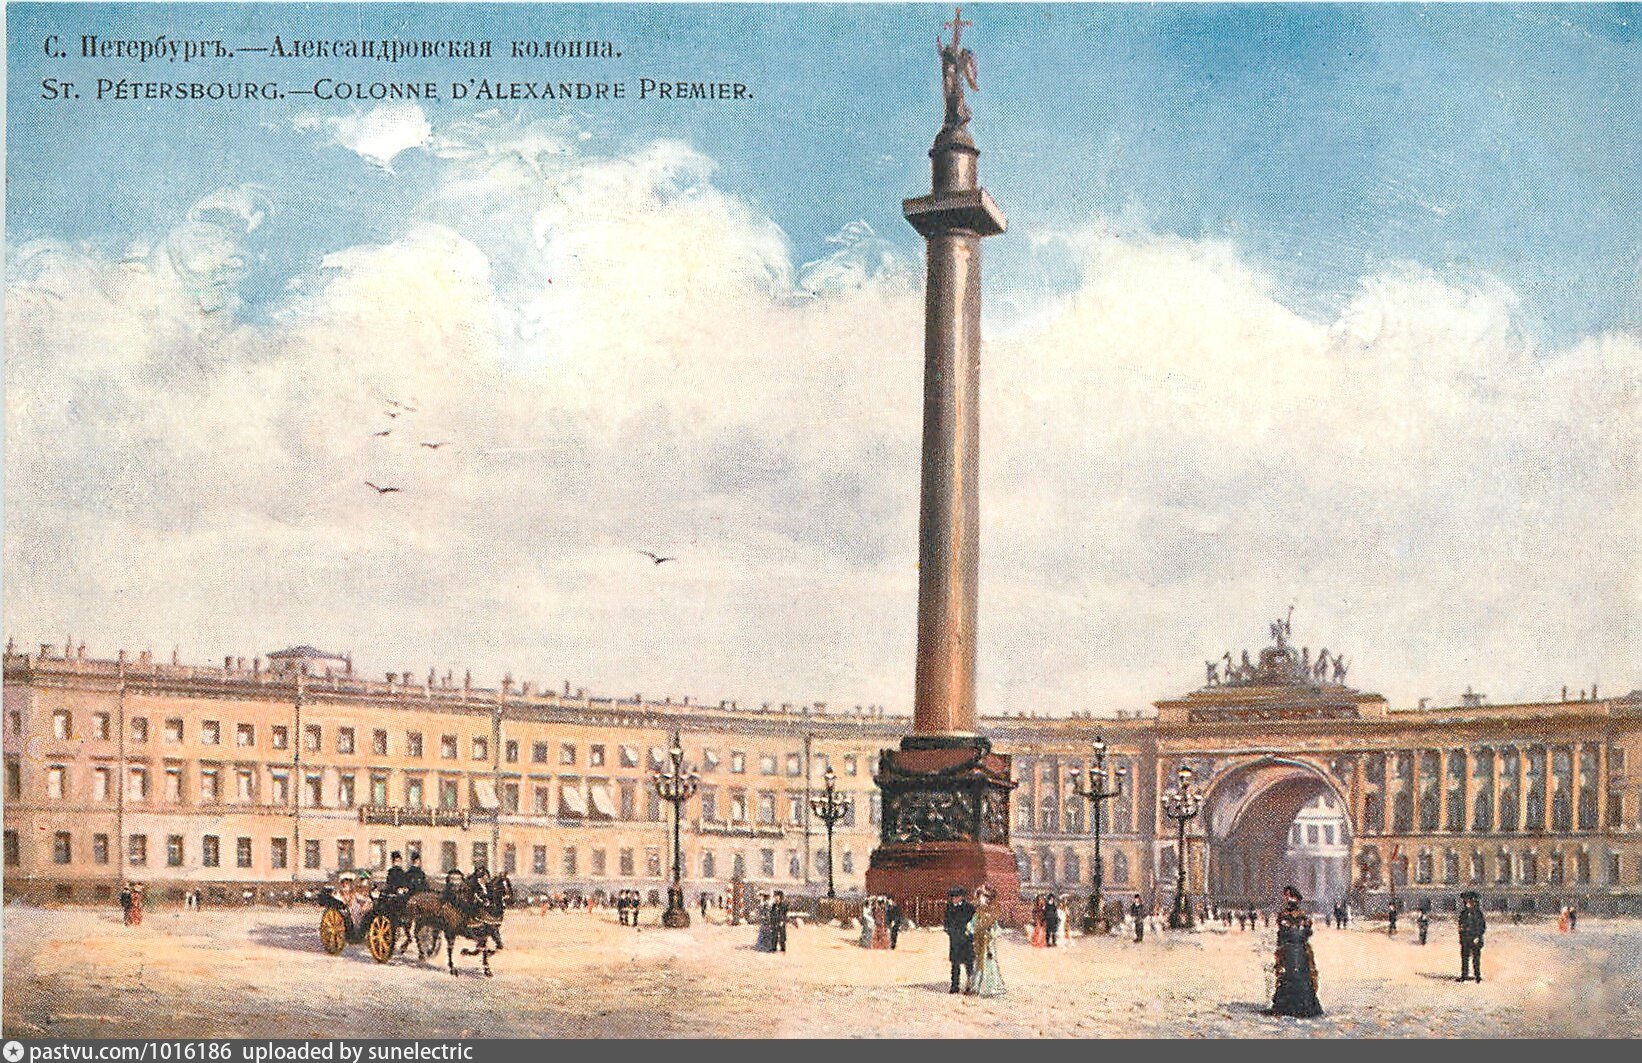 Александровская колонна в Санкт-Петербурге в 19 веке